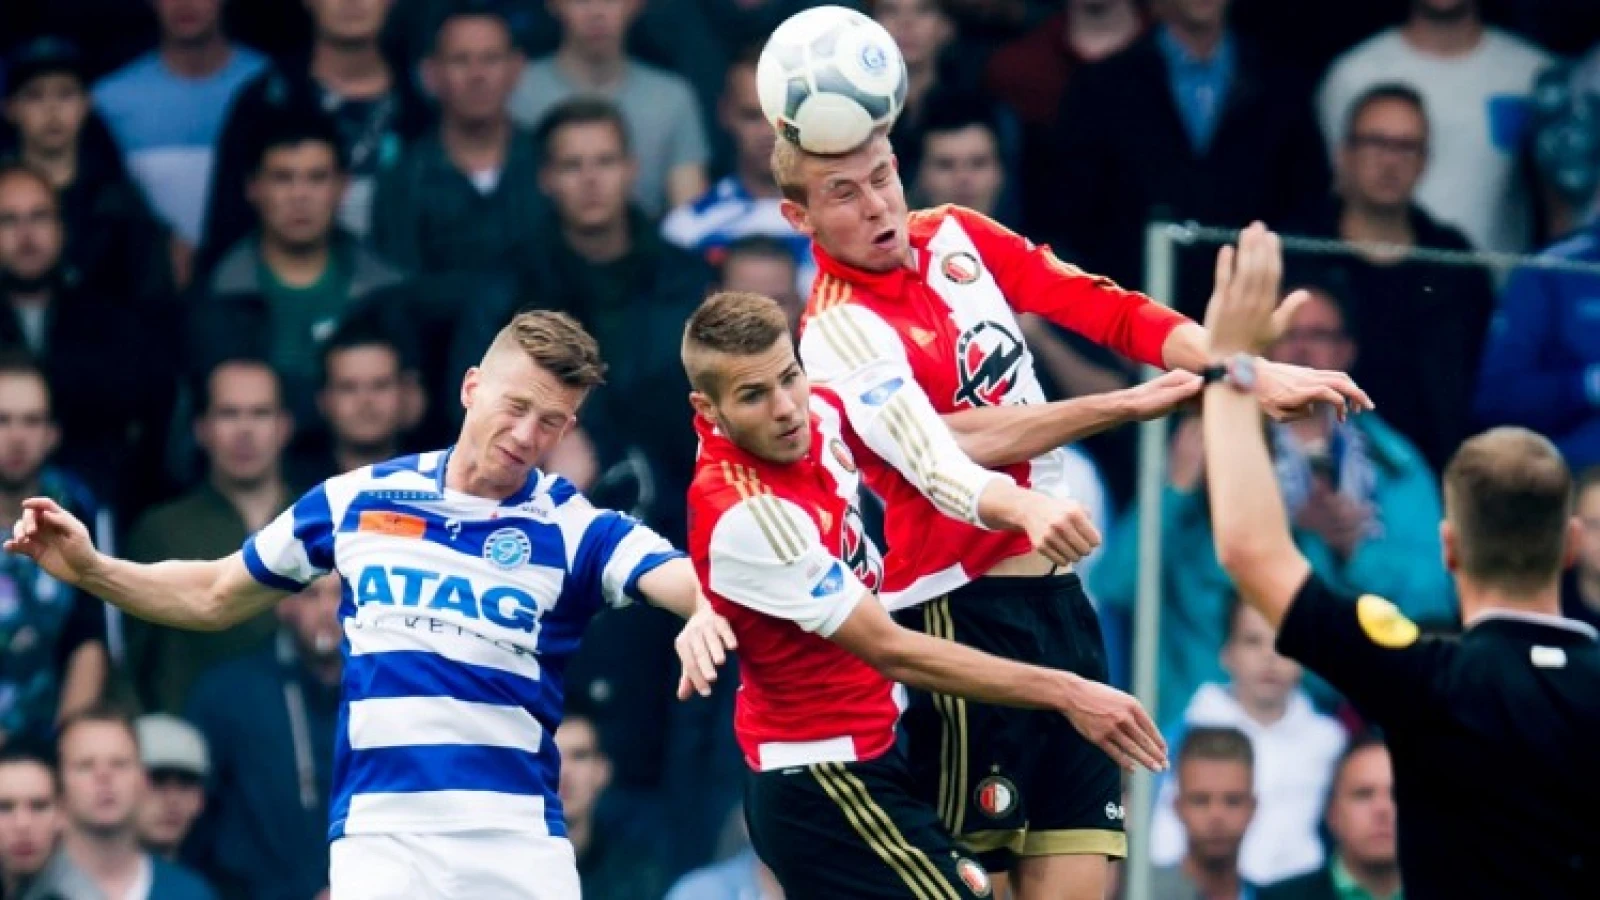 'Interlandperiode is Feyenoord goed gezind'